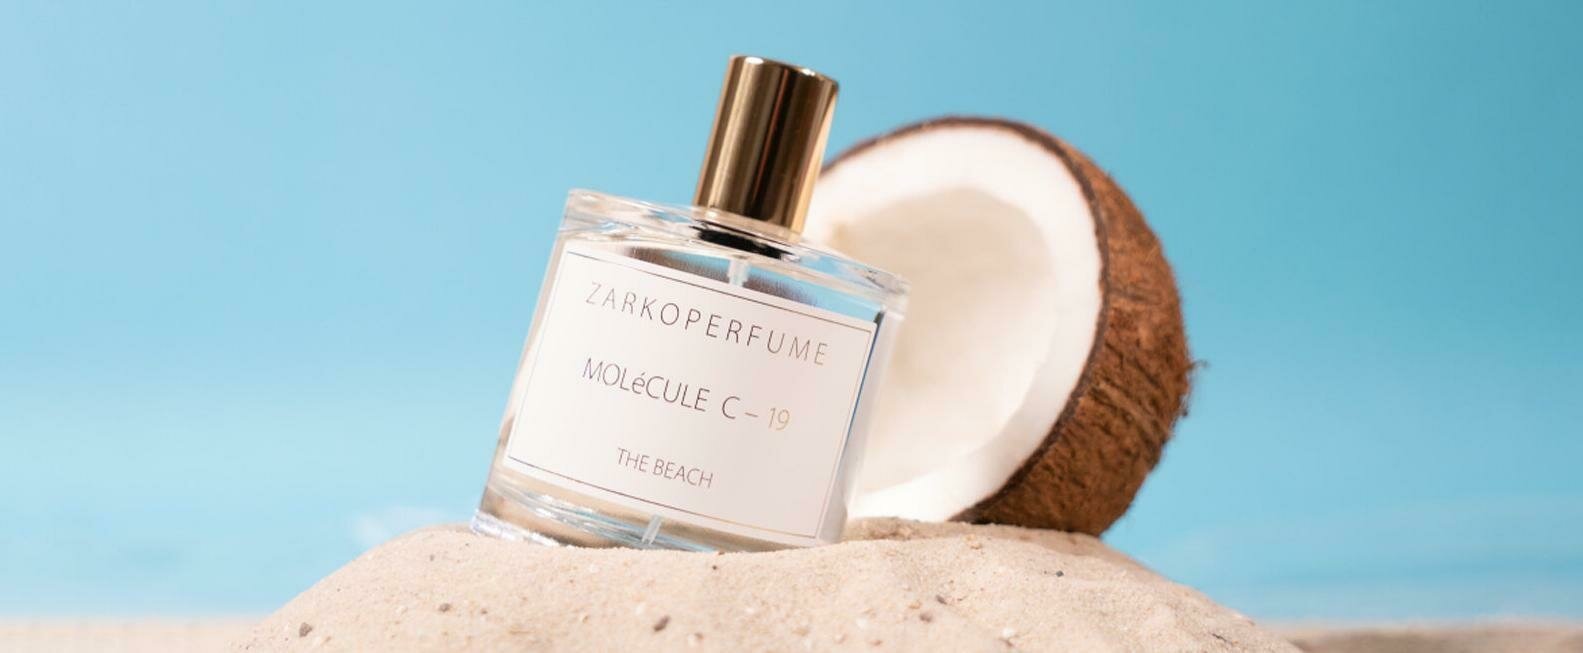 "Molécule C-19 - The Beach" - Zarkoperfume's New Gourmand Woody Molecular Fragrance 